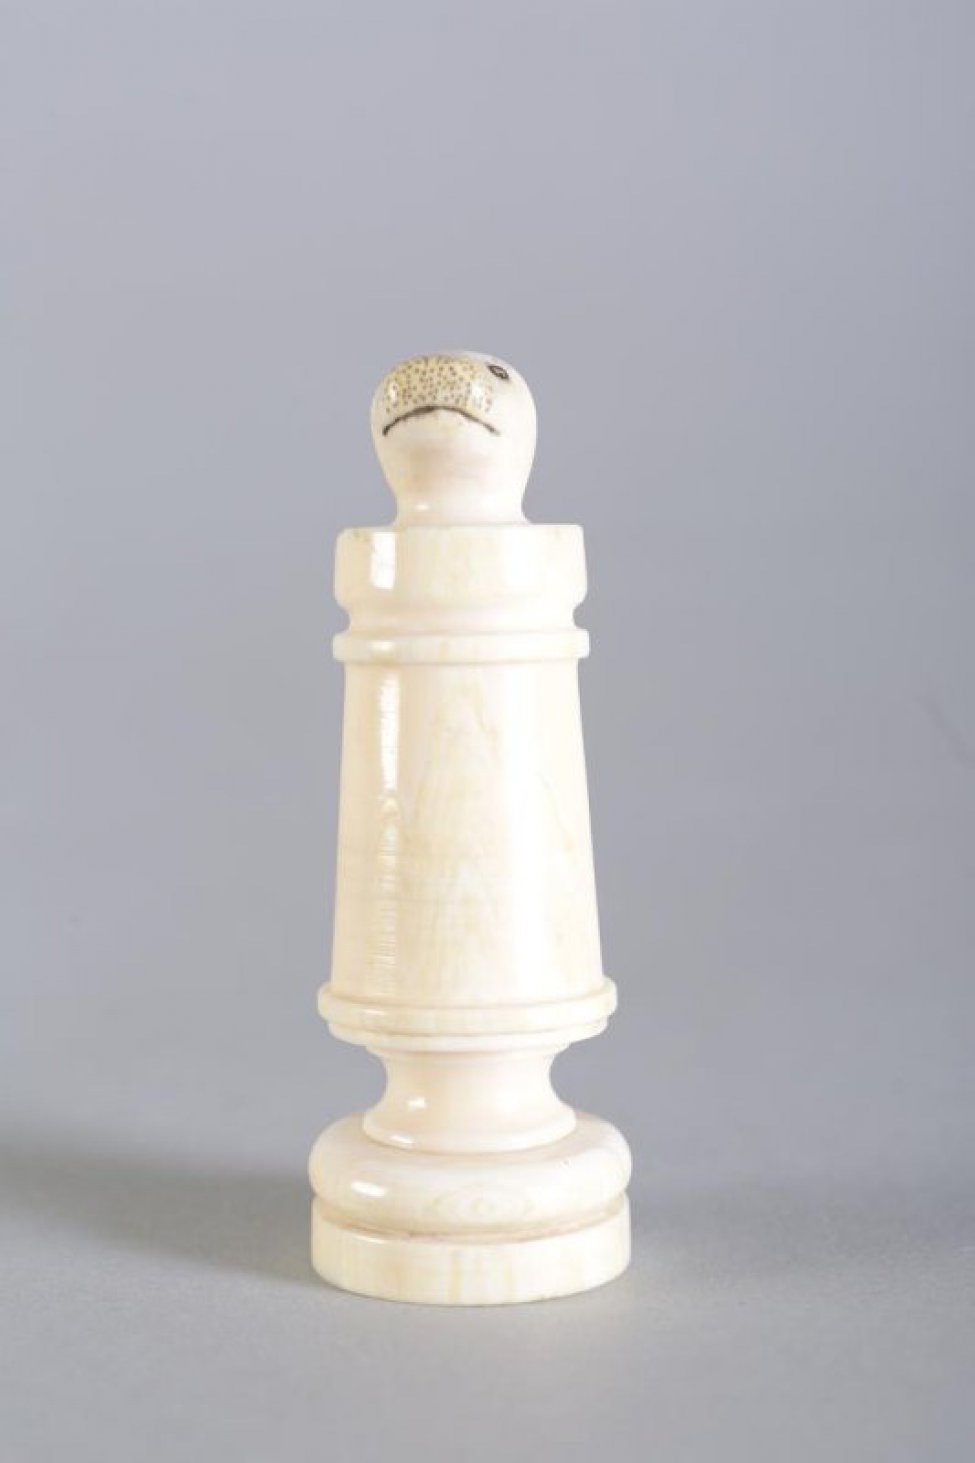 Шахматная фигура белого цвета в виде цилиндрической профилированной балясины, вверху заканчивается головой нерпы. На голове неглубокой резьбой (процарапыванием) с черной тонировкой обозначены  маленькие круглые глаза, линия рта и точки на морде. Вся фигура выполнена из одного куска бивня.